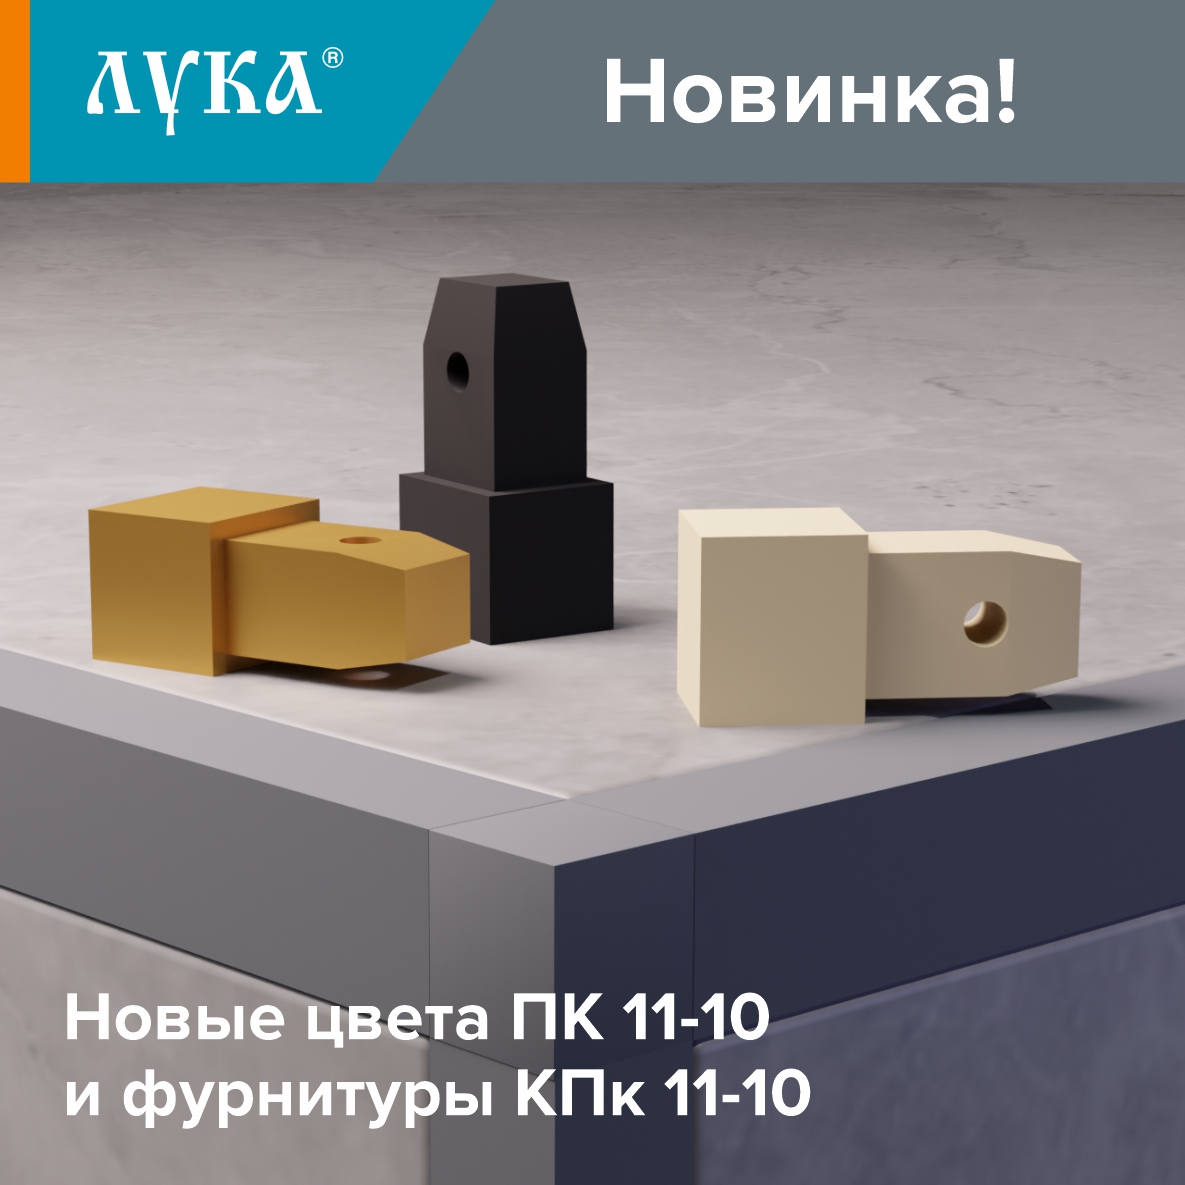 НОВИНКА! Новые цвета ПК 11-10 и фурнитуры КПк 11-10